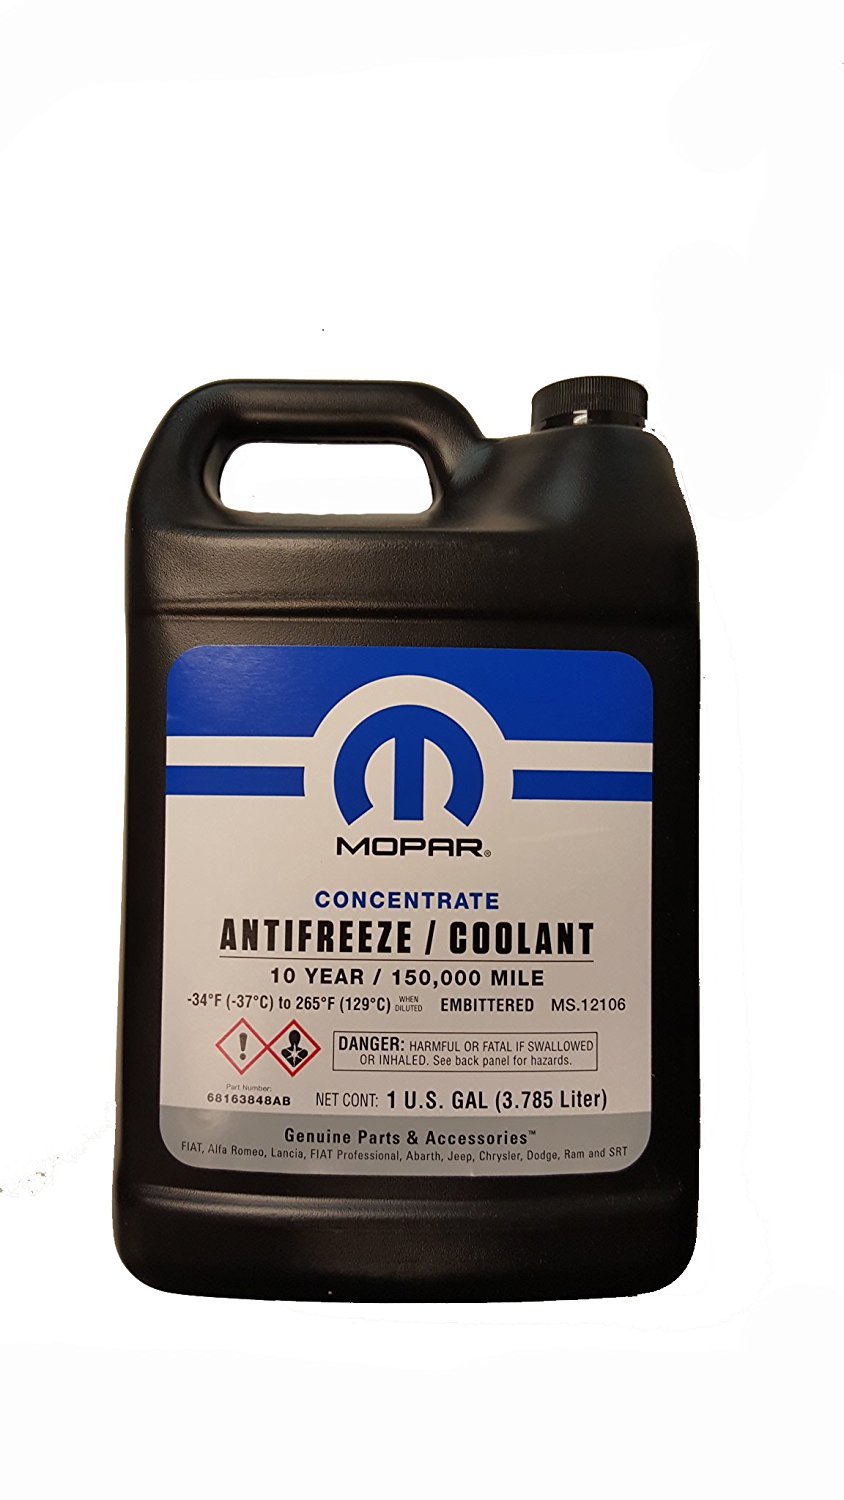 MOPAR Antifreeze/Coolant, 150,000 Mile OAT Formula, Concentrated - 1 Gallon  | Best Prices & Reviews at Morris 4x4